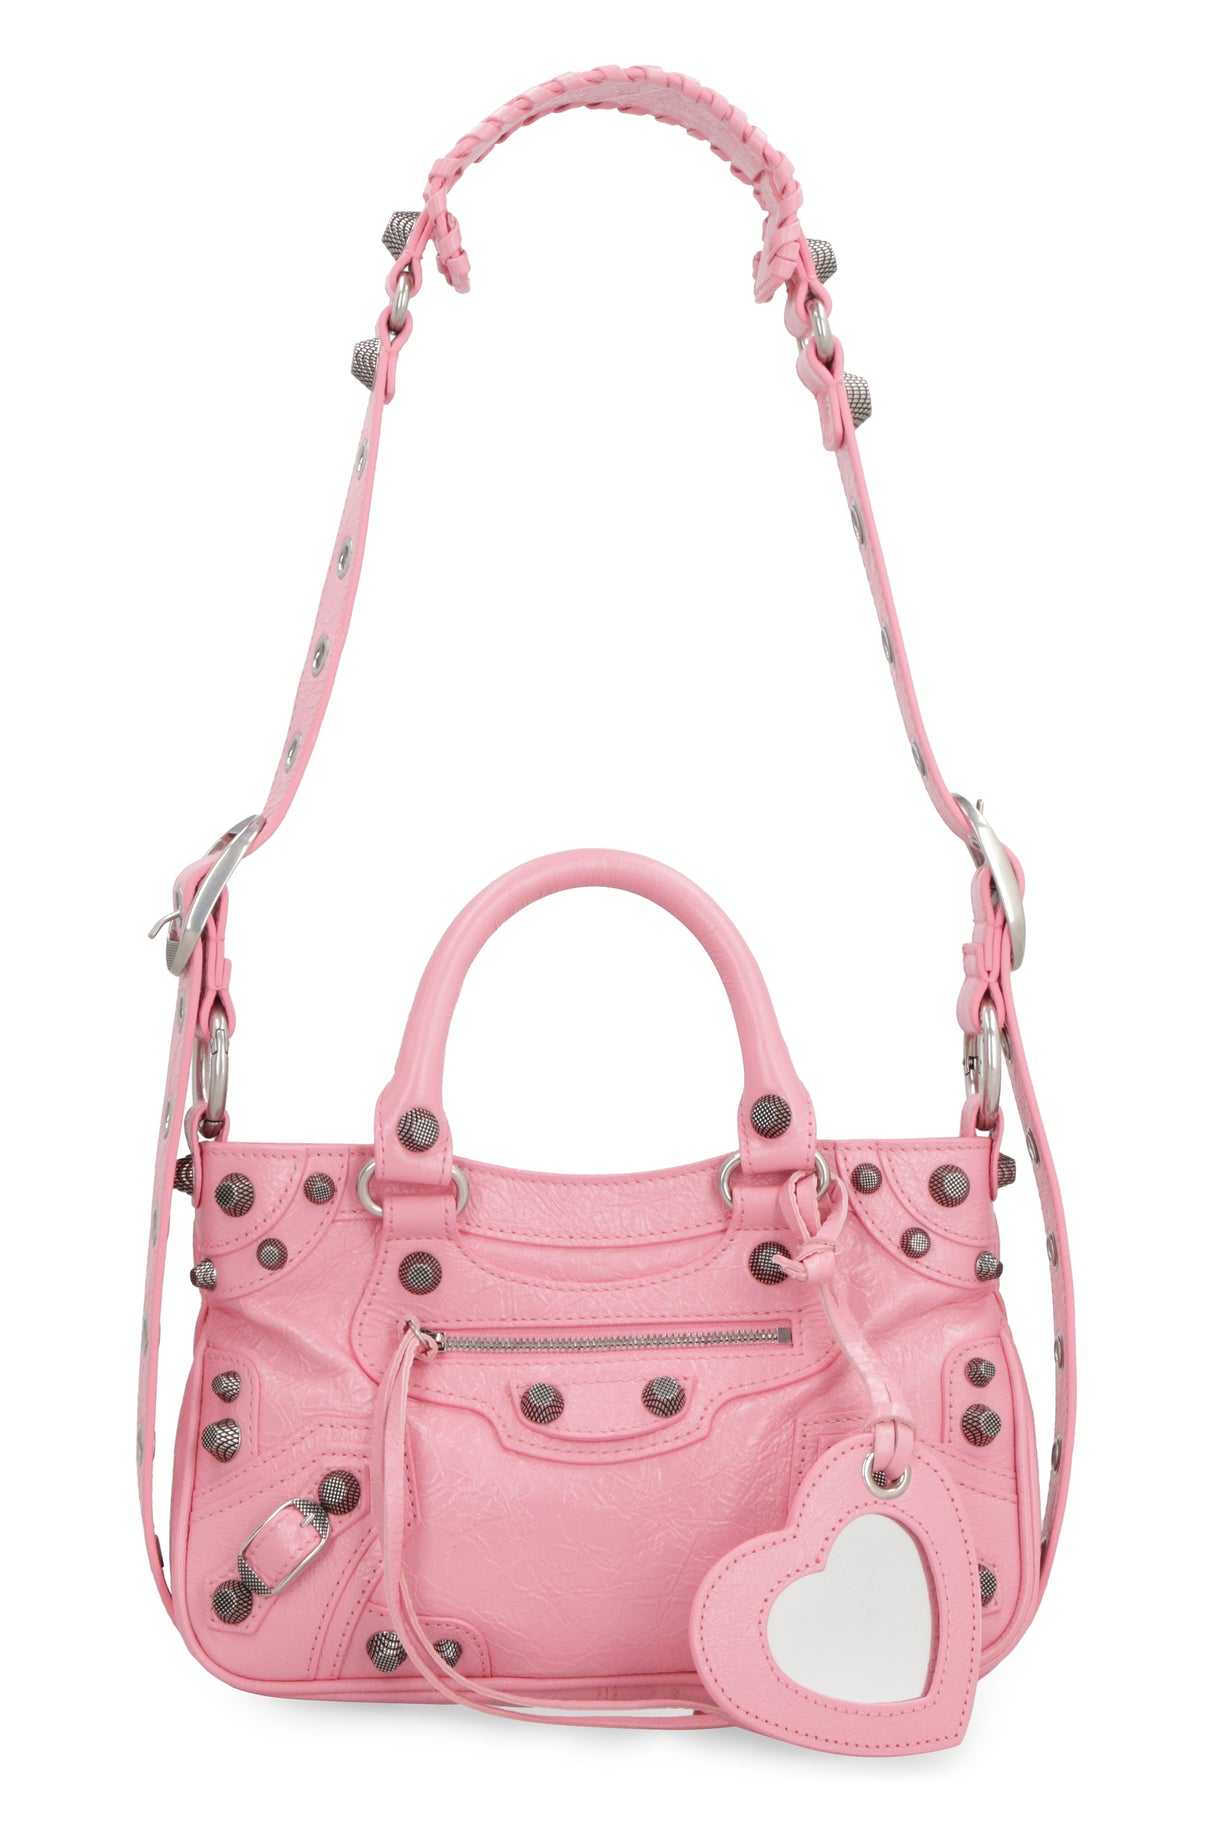 Túi xách thời trang làm bằng da lộn cắt xỏ hạt dành cho phụ nữ màu hồng - mùa FW23